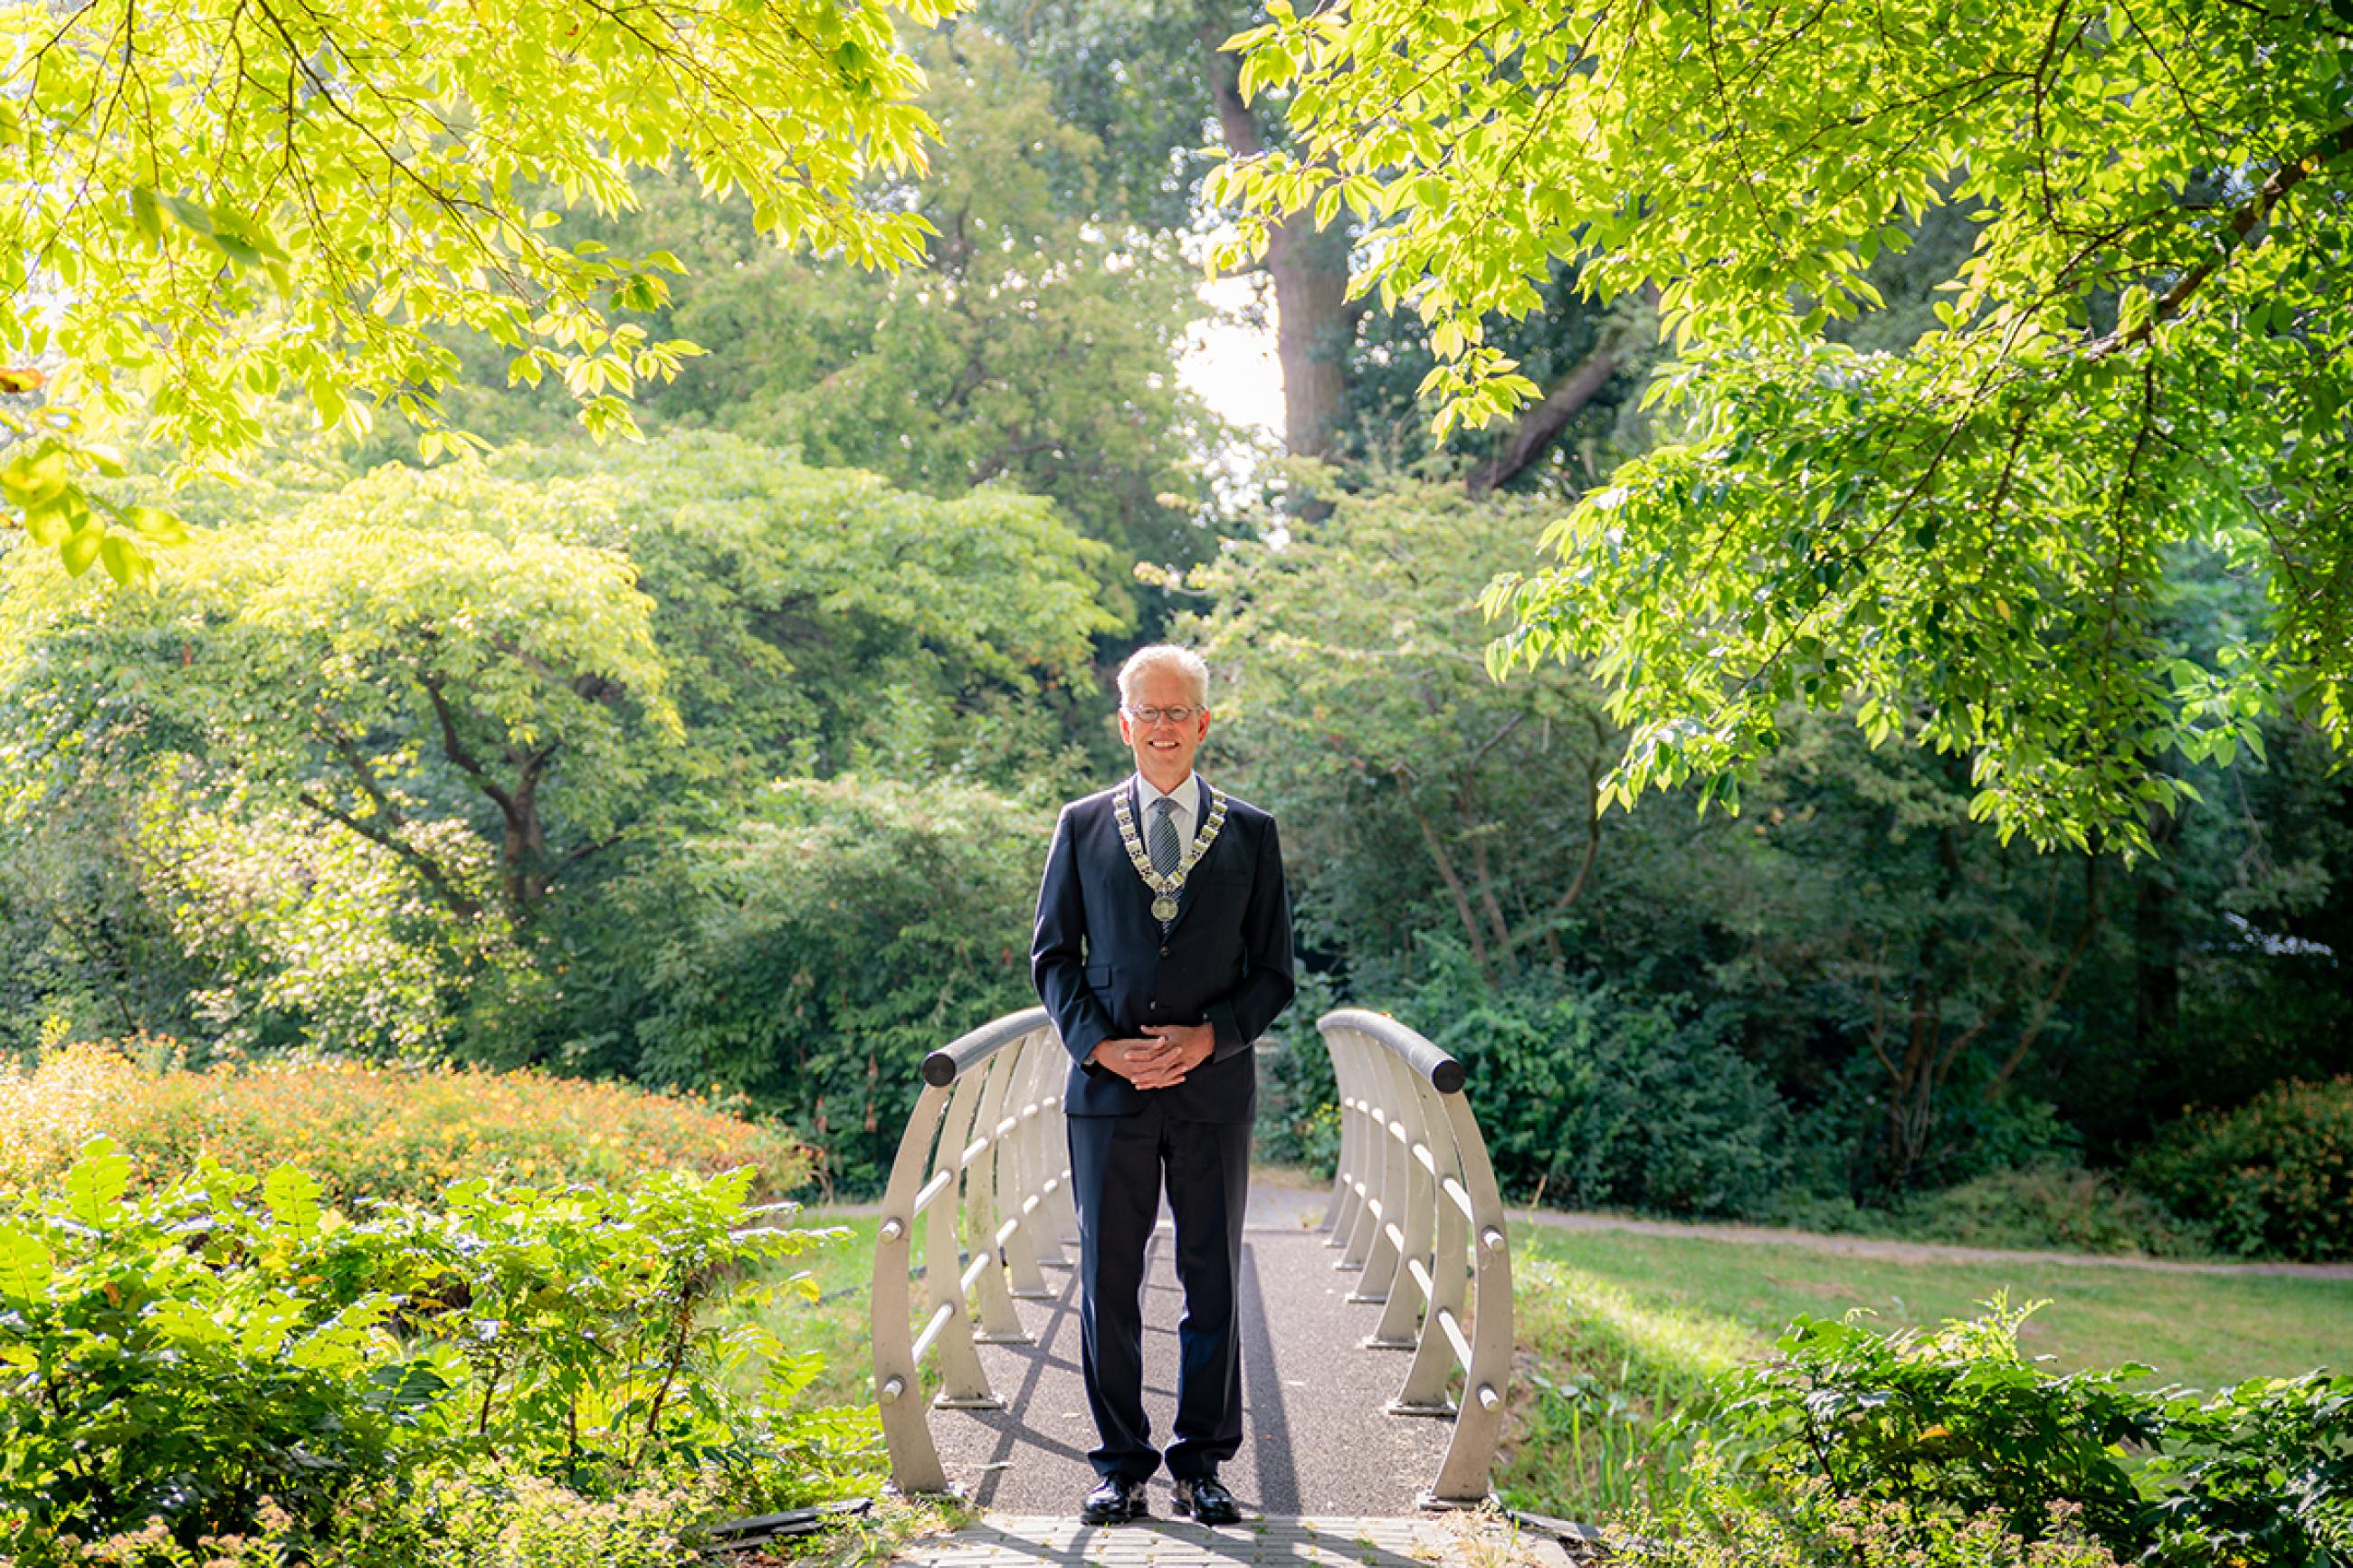 burgemeester Don Bijl in groen park